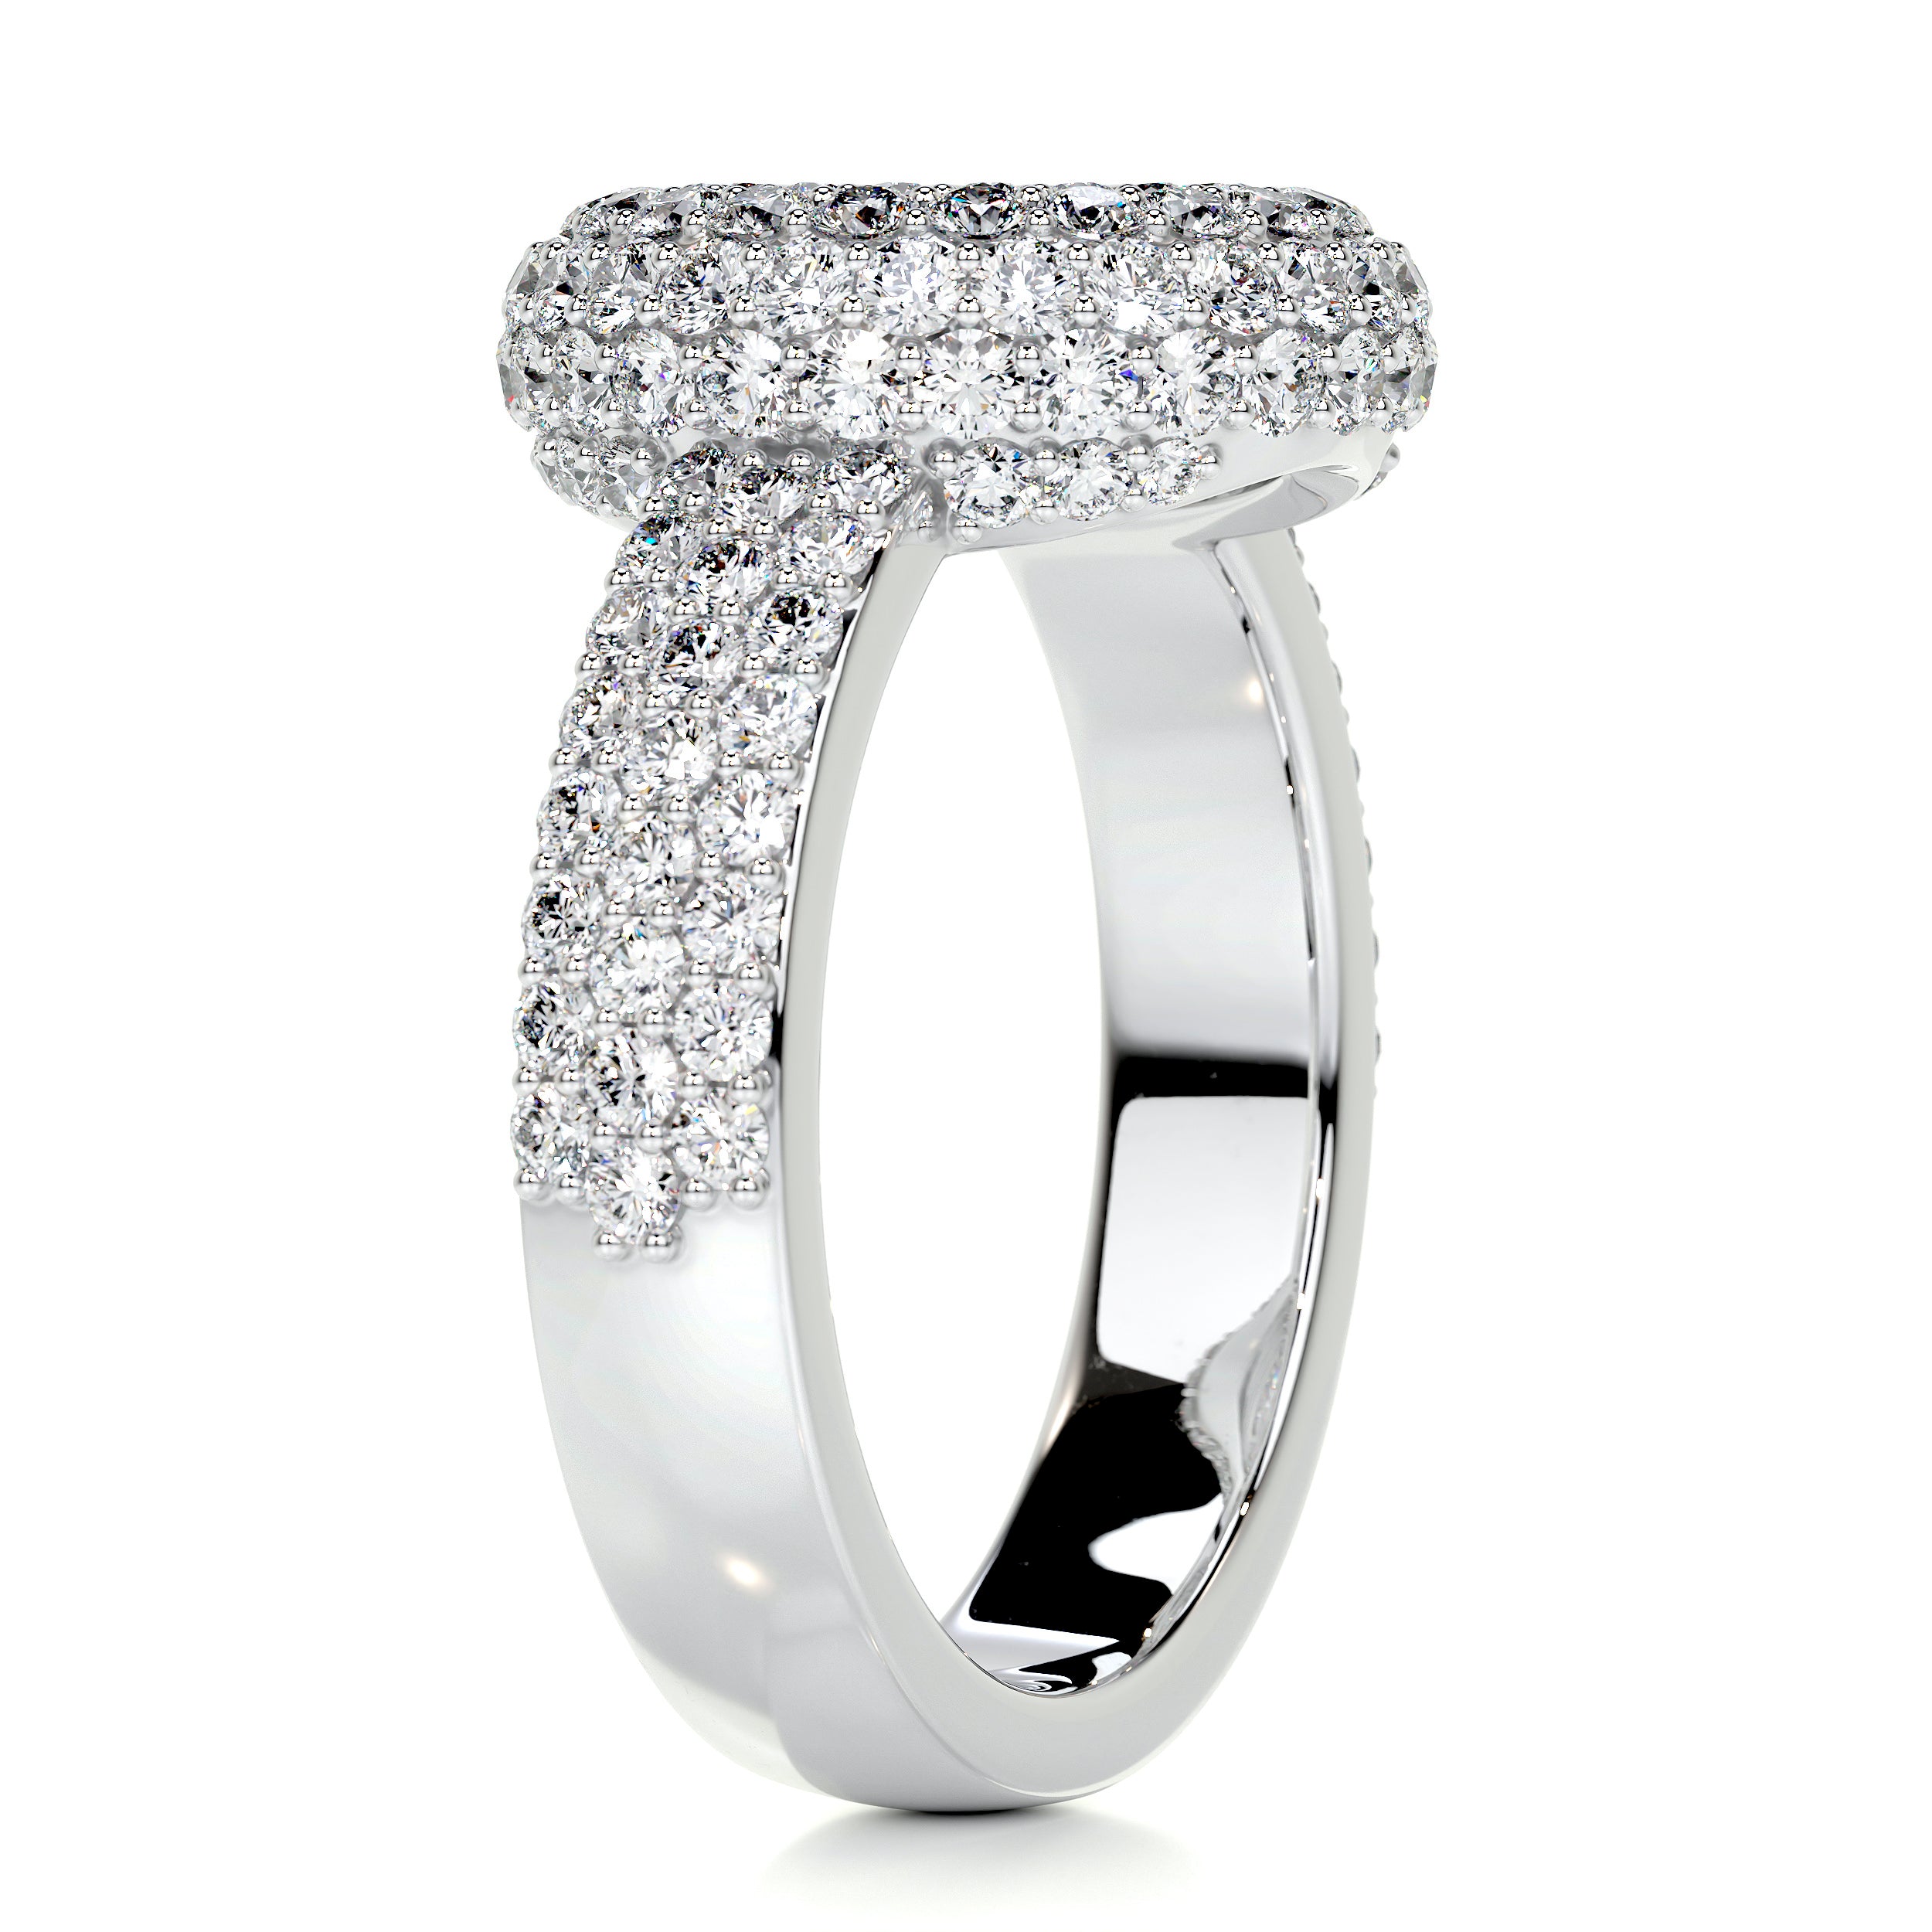 Reagan Diamond Engagement Ring -Platinum